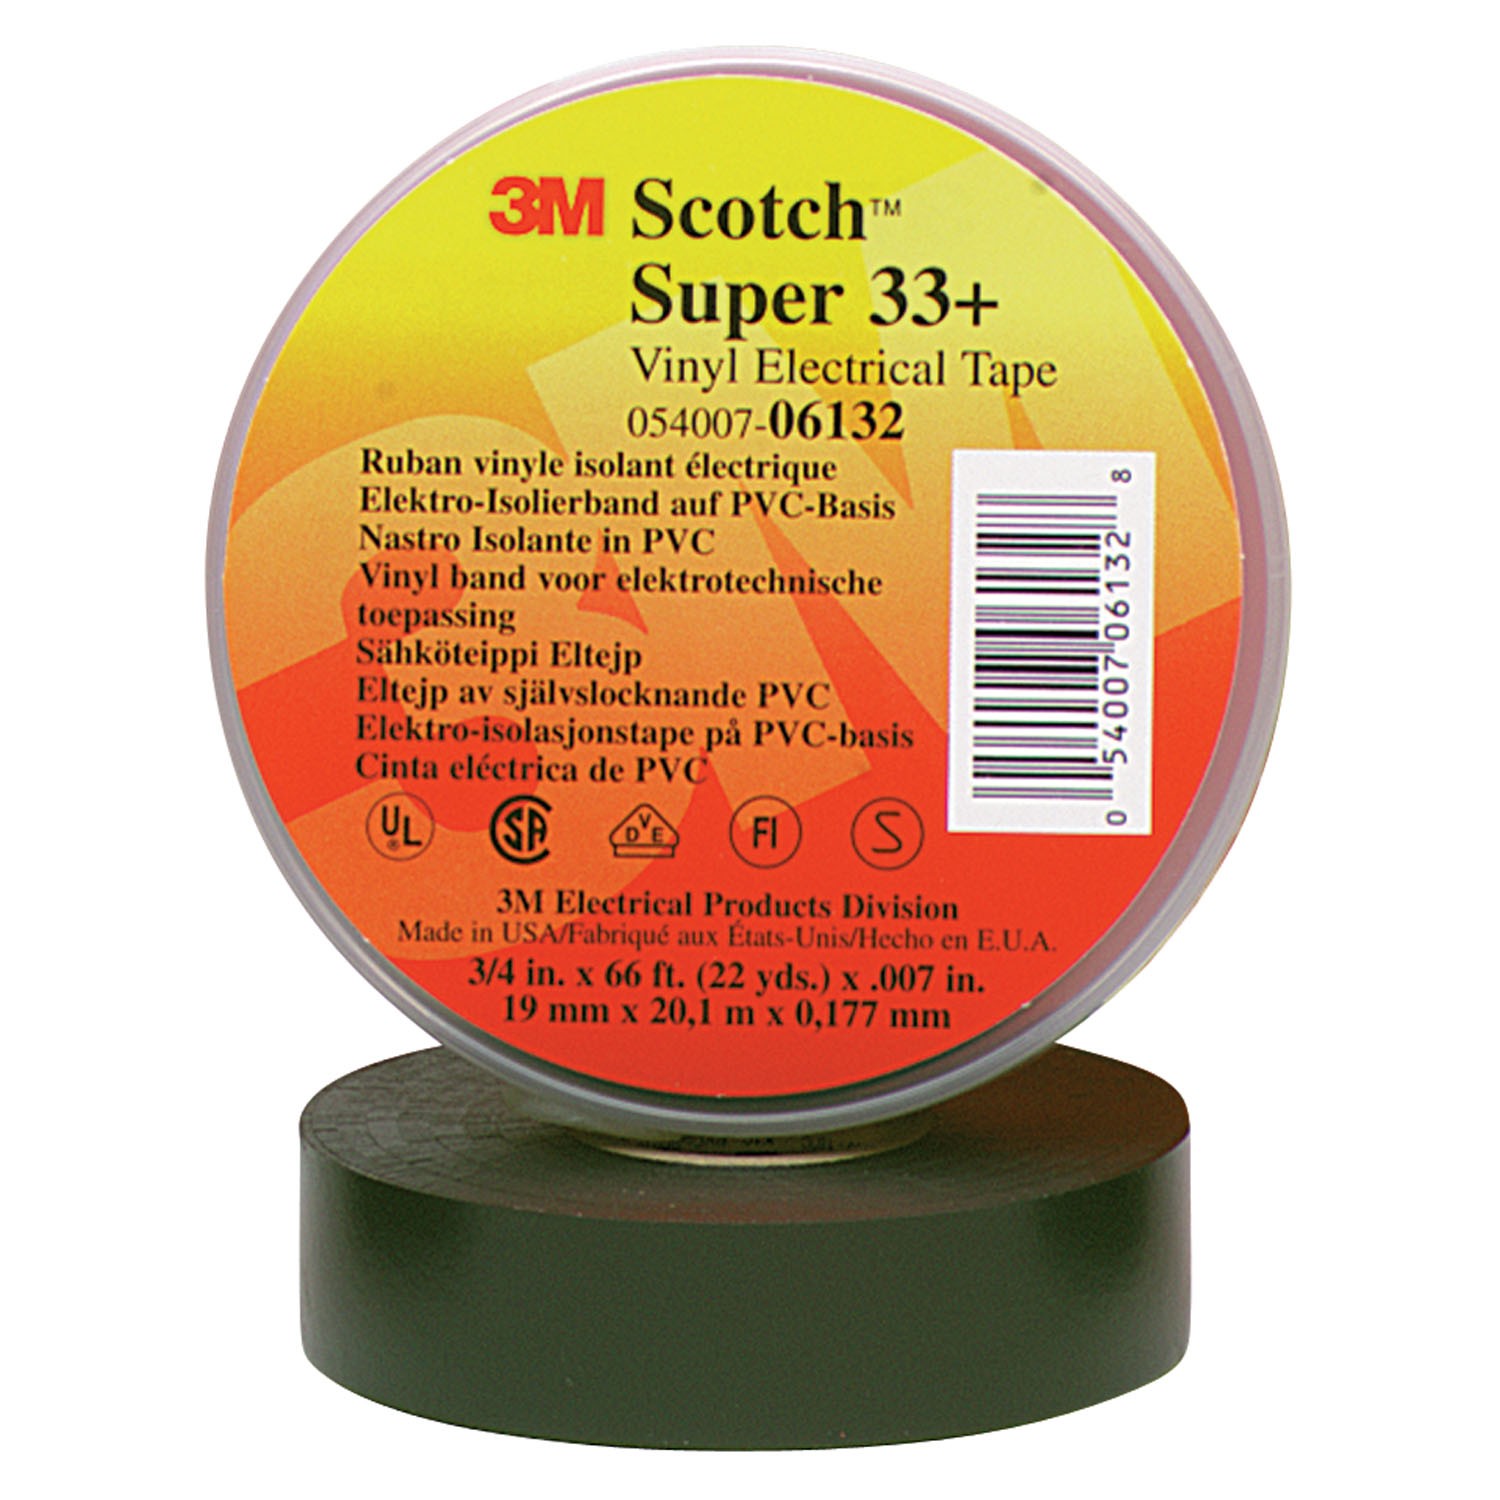 3M Scotch Super 33+ Vinyl Electrical Tape